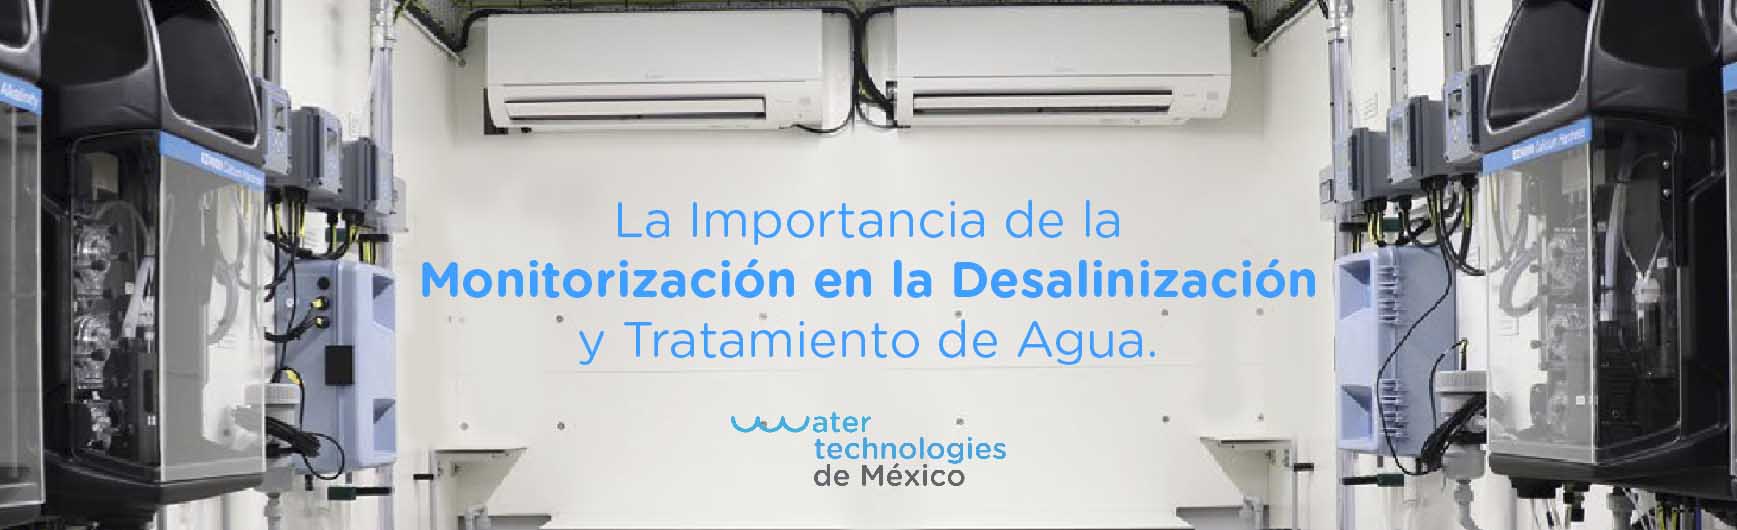 La Importancia de la Monitorización en la Desalinización y Tratamiento de Agua.